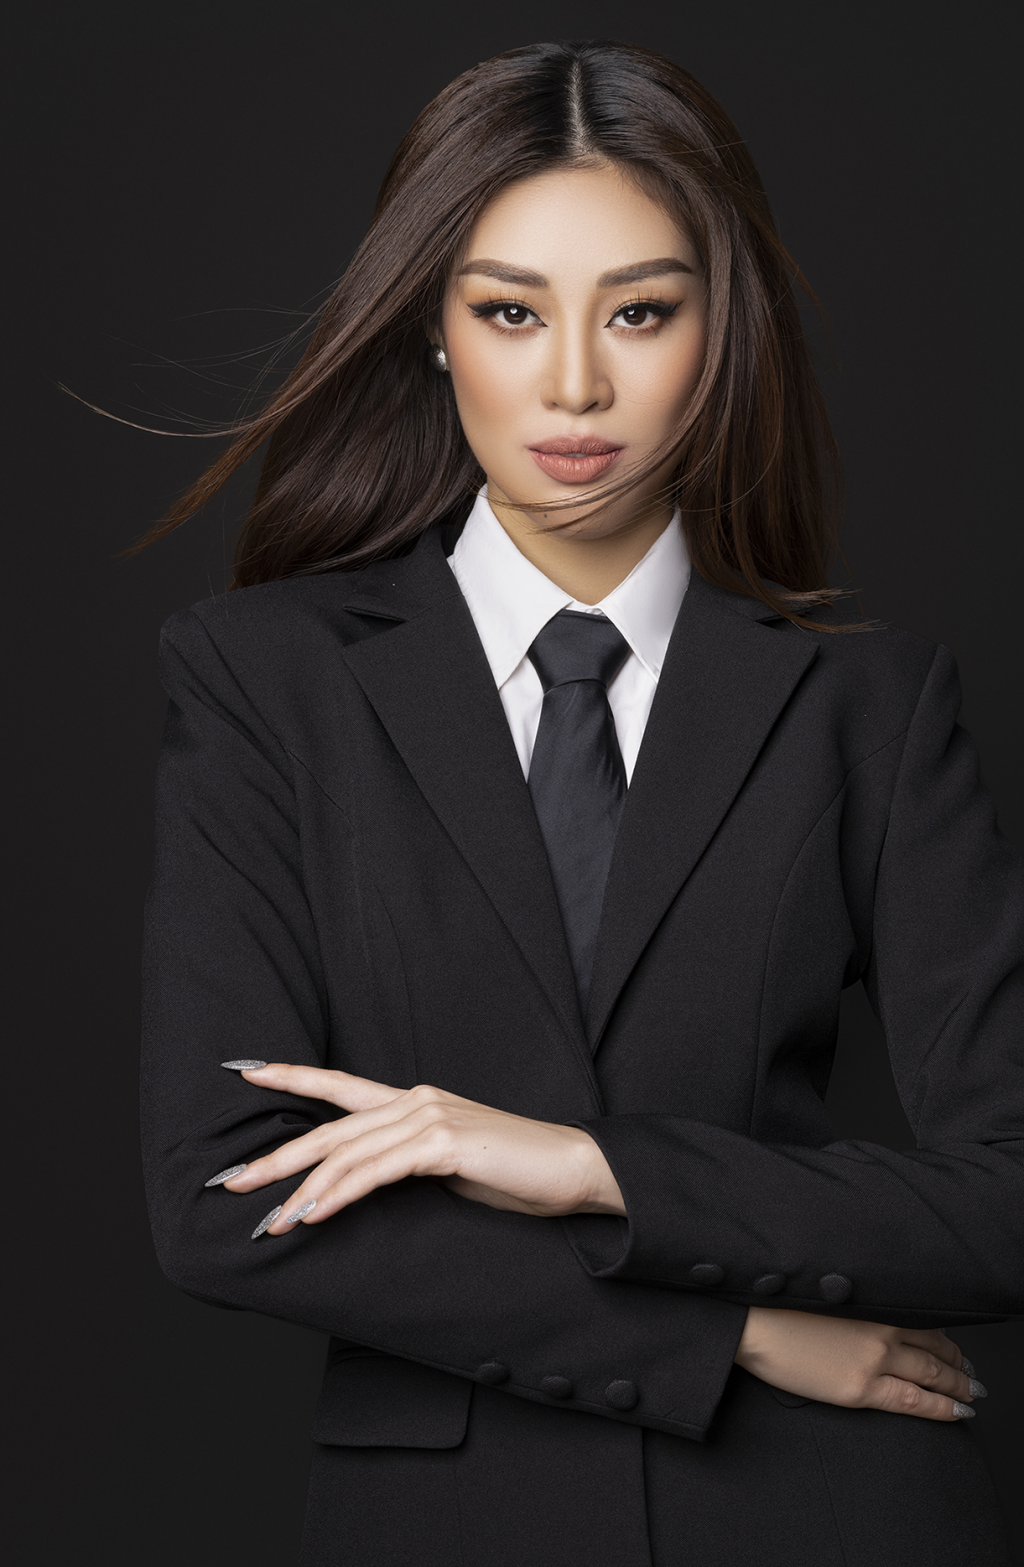 Hoa hậu Khánh Vân công bố dự án đầu tiên sau khi kết thúc nhiệm kỳ: Business Woman